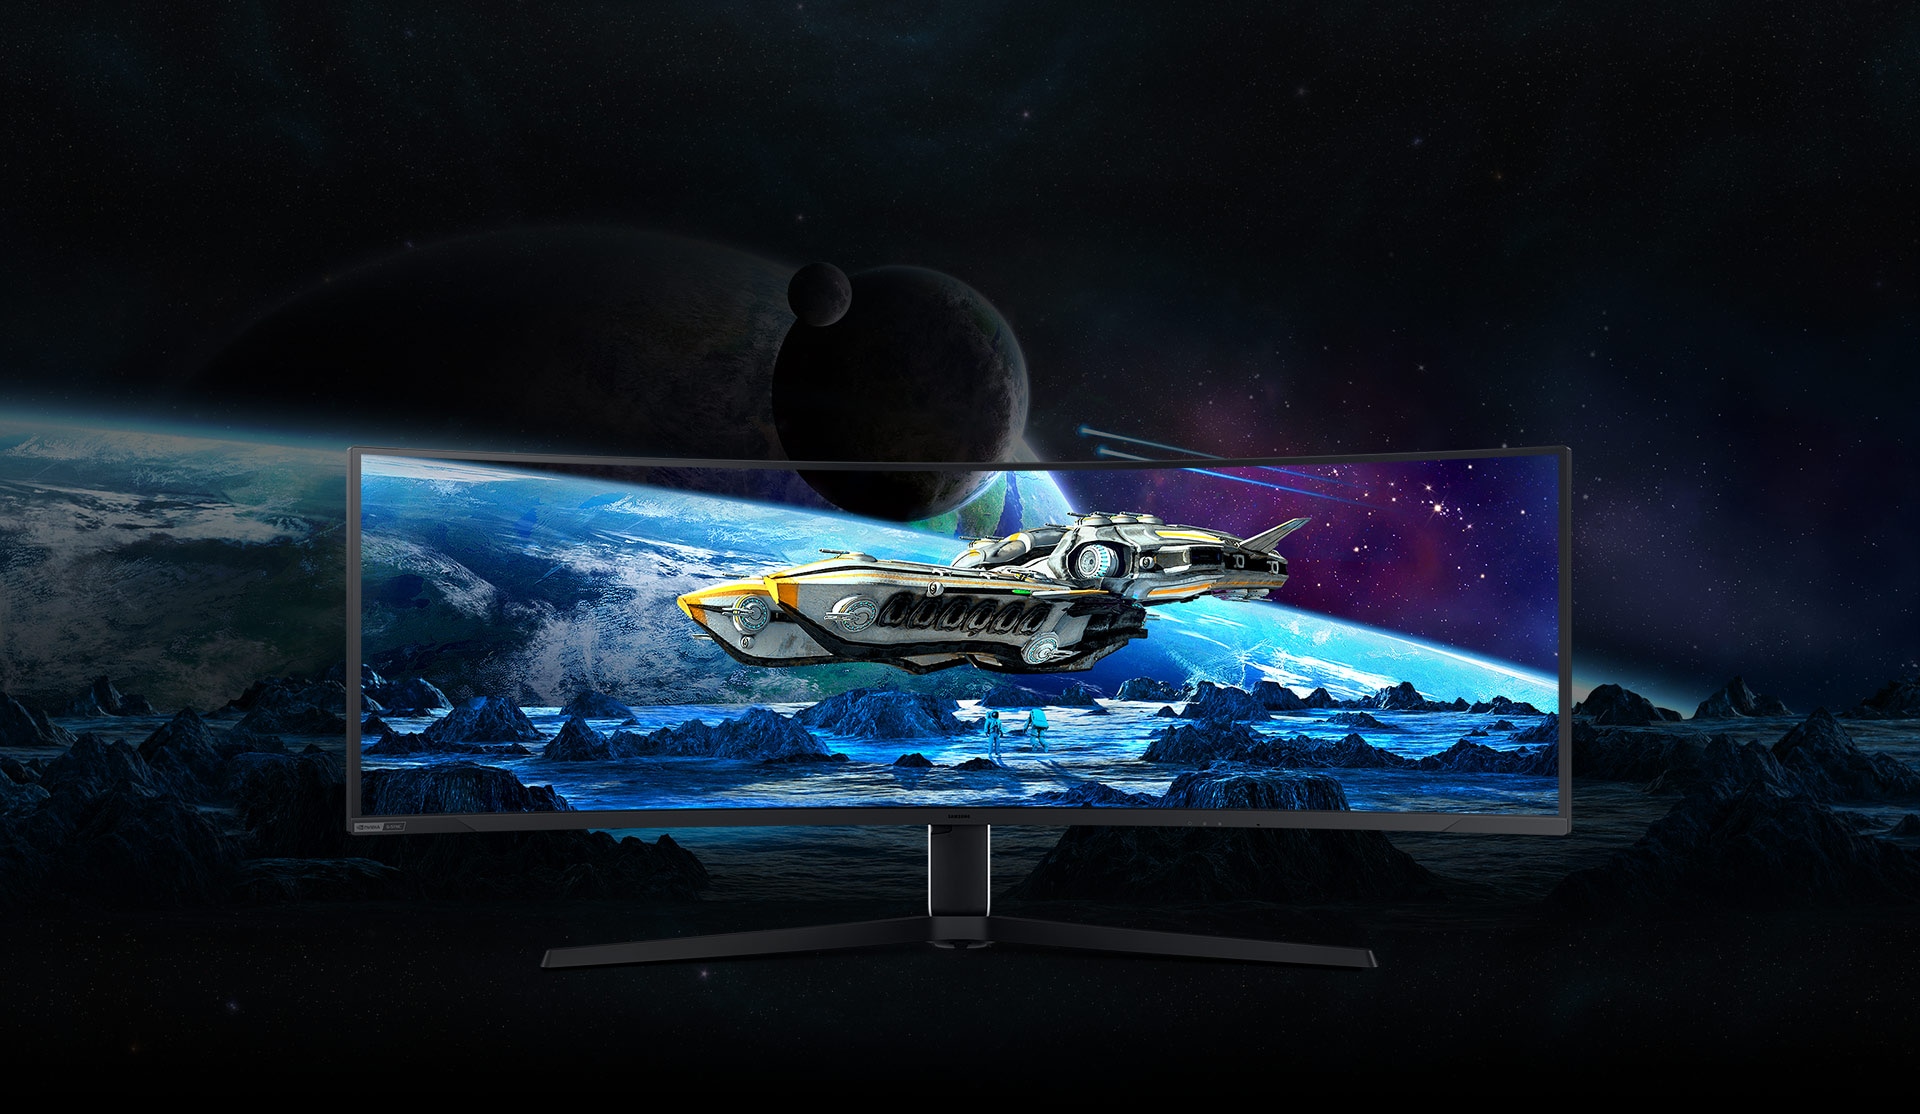 屏幕上显示一艘黄灰相间的宇宙飞船在一个多山的星球上空低空飞行。飞船后面是另一颗行星，它从屏幕延伸到显示器后面的背景中。奥德赛Neo G9的屏幕分为两部分:左边是浅灰色，上面写着“10位”字样。而右侧则用“12位”标记的颜色更明亮、更清晰。随着屏幕合而为一，与屏幕外的部分相比，屏幕的颜色更清晰，细节也更多，对比度也更高。